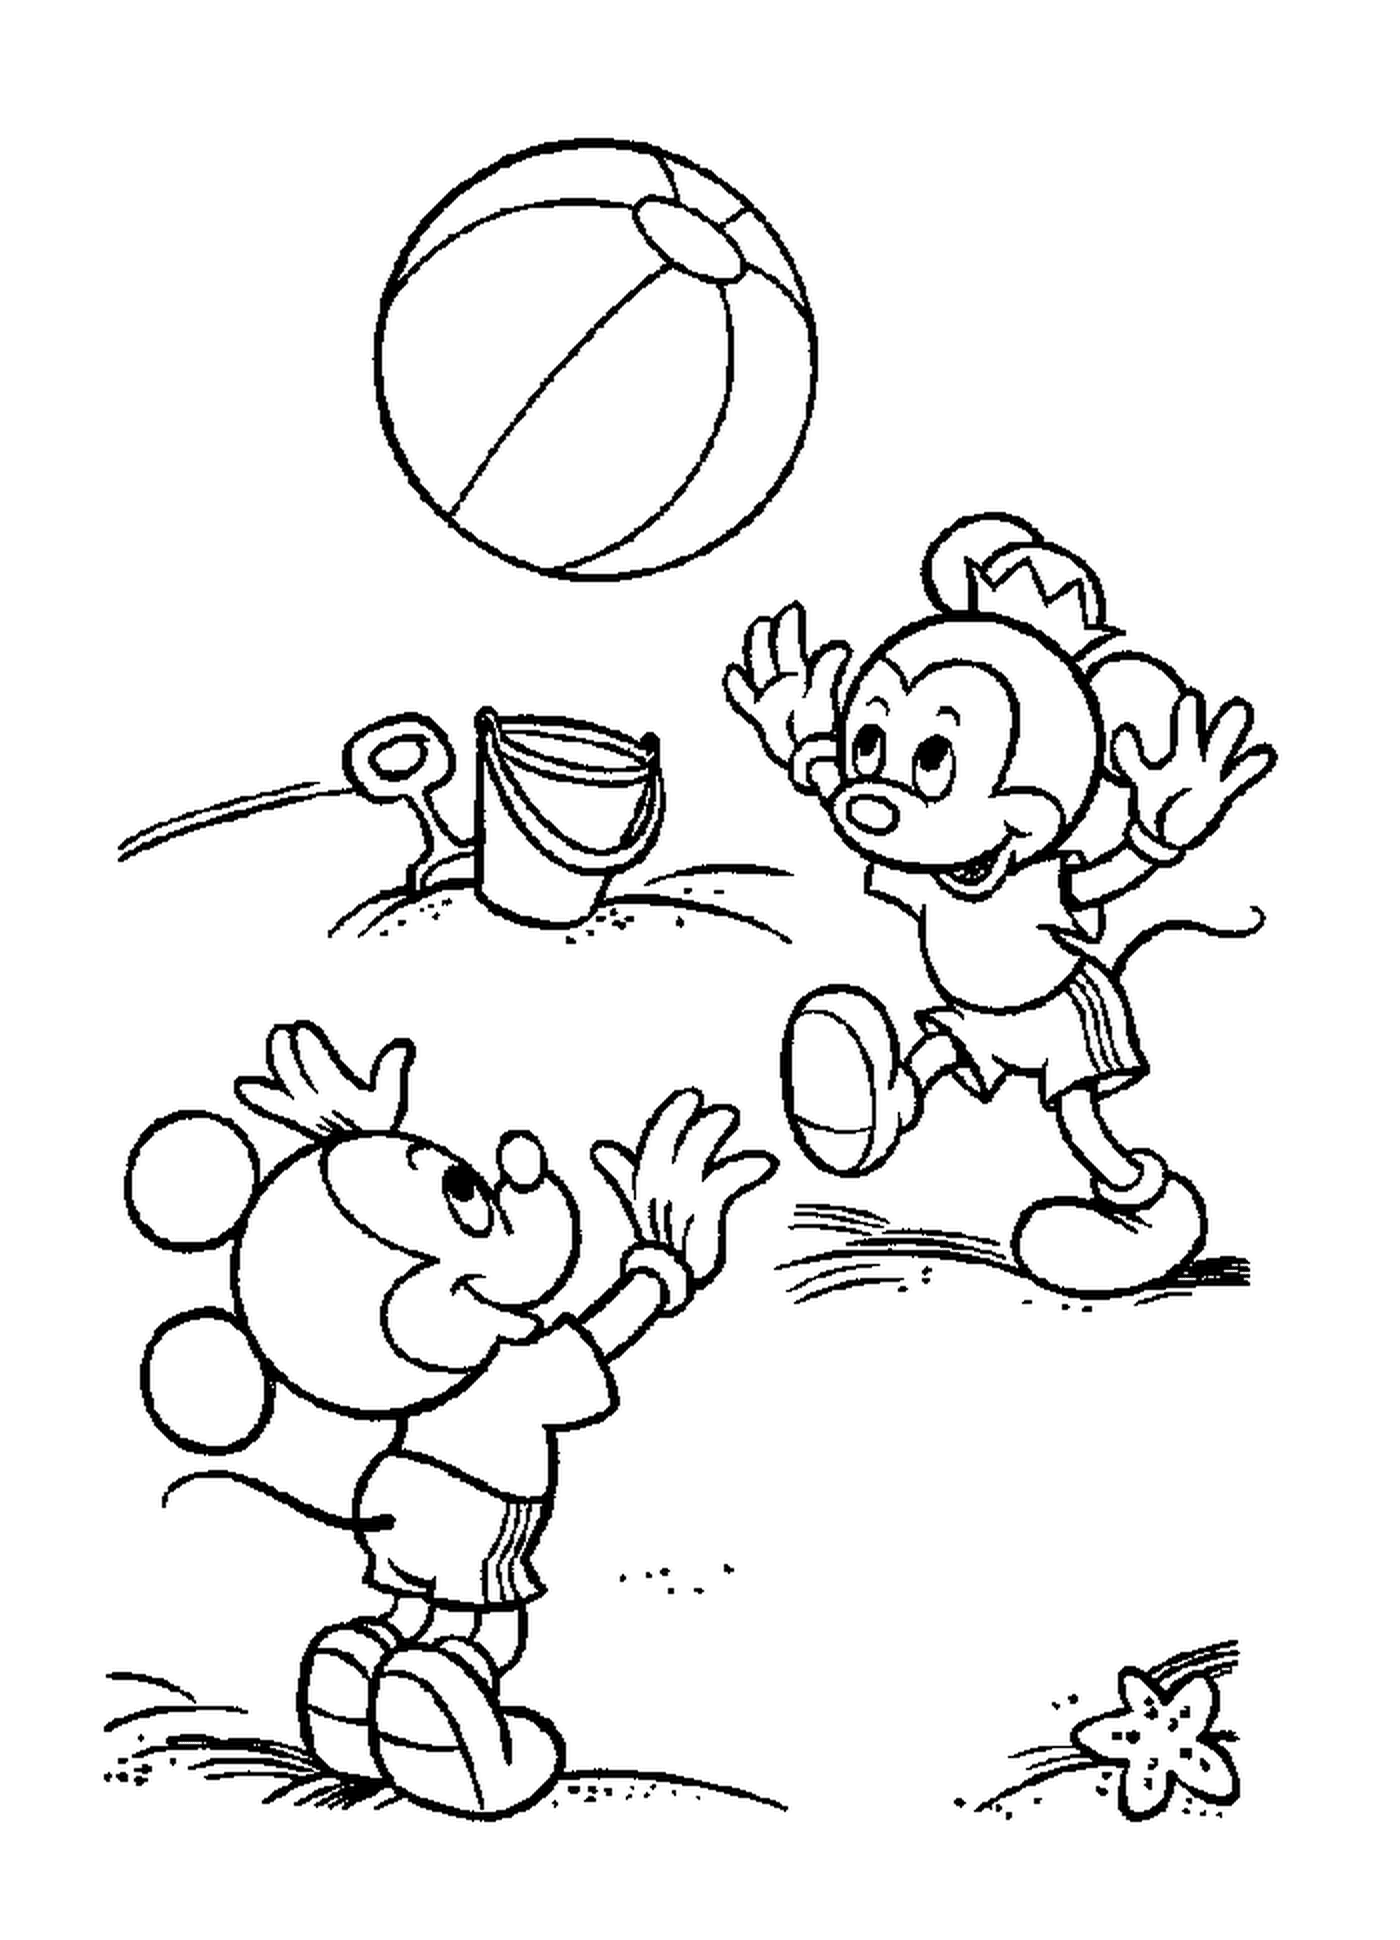  मिकी के बच्चों का समुद्र तट पर : मिकी माउस गेंद खेल रहा है 